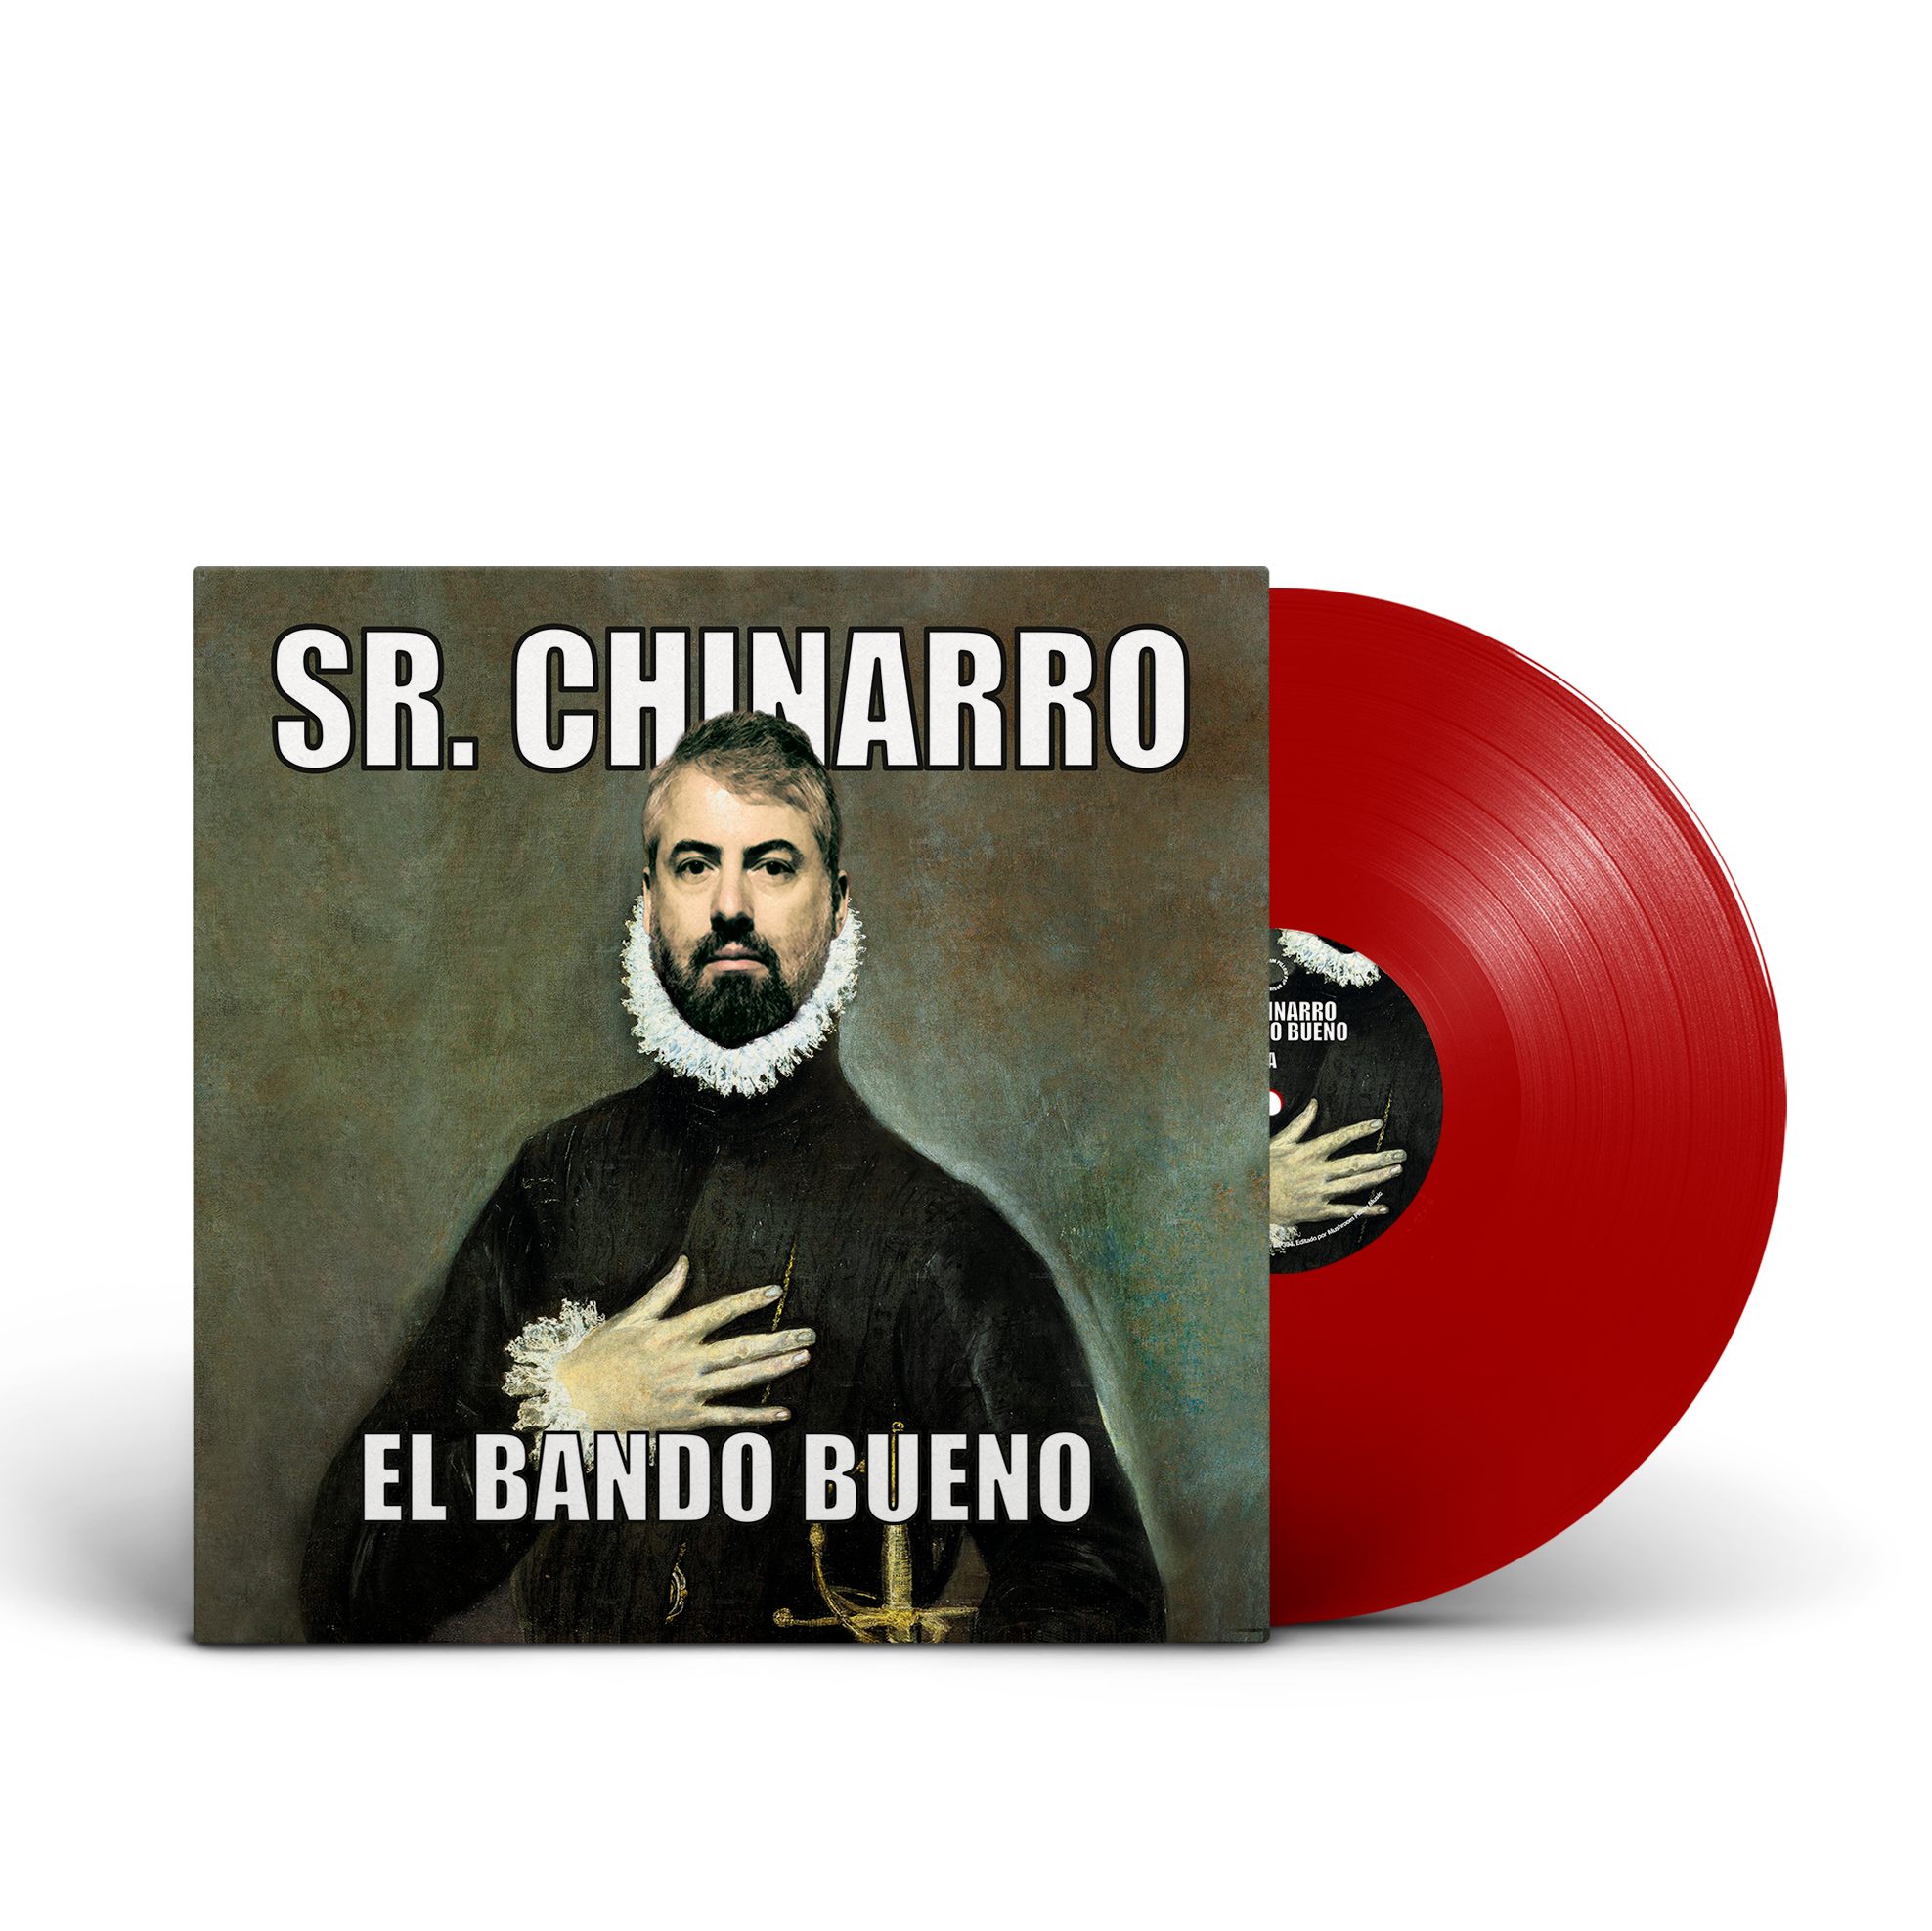 Sr Chinarro "El bando bueno" LP Color